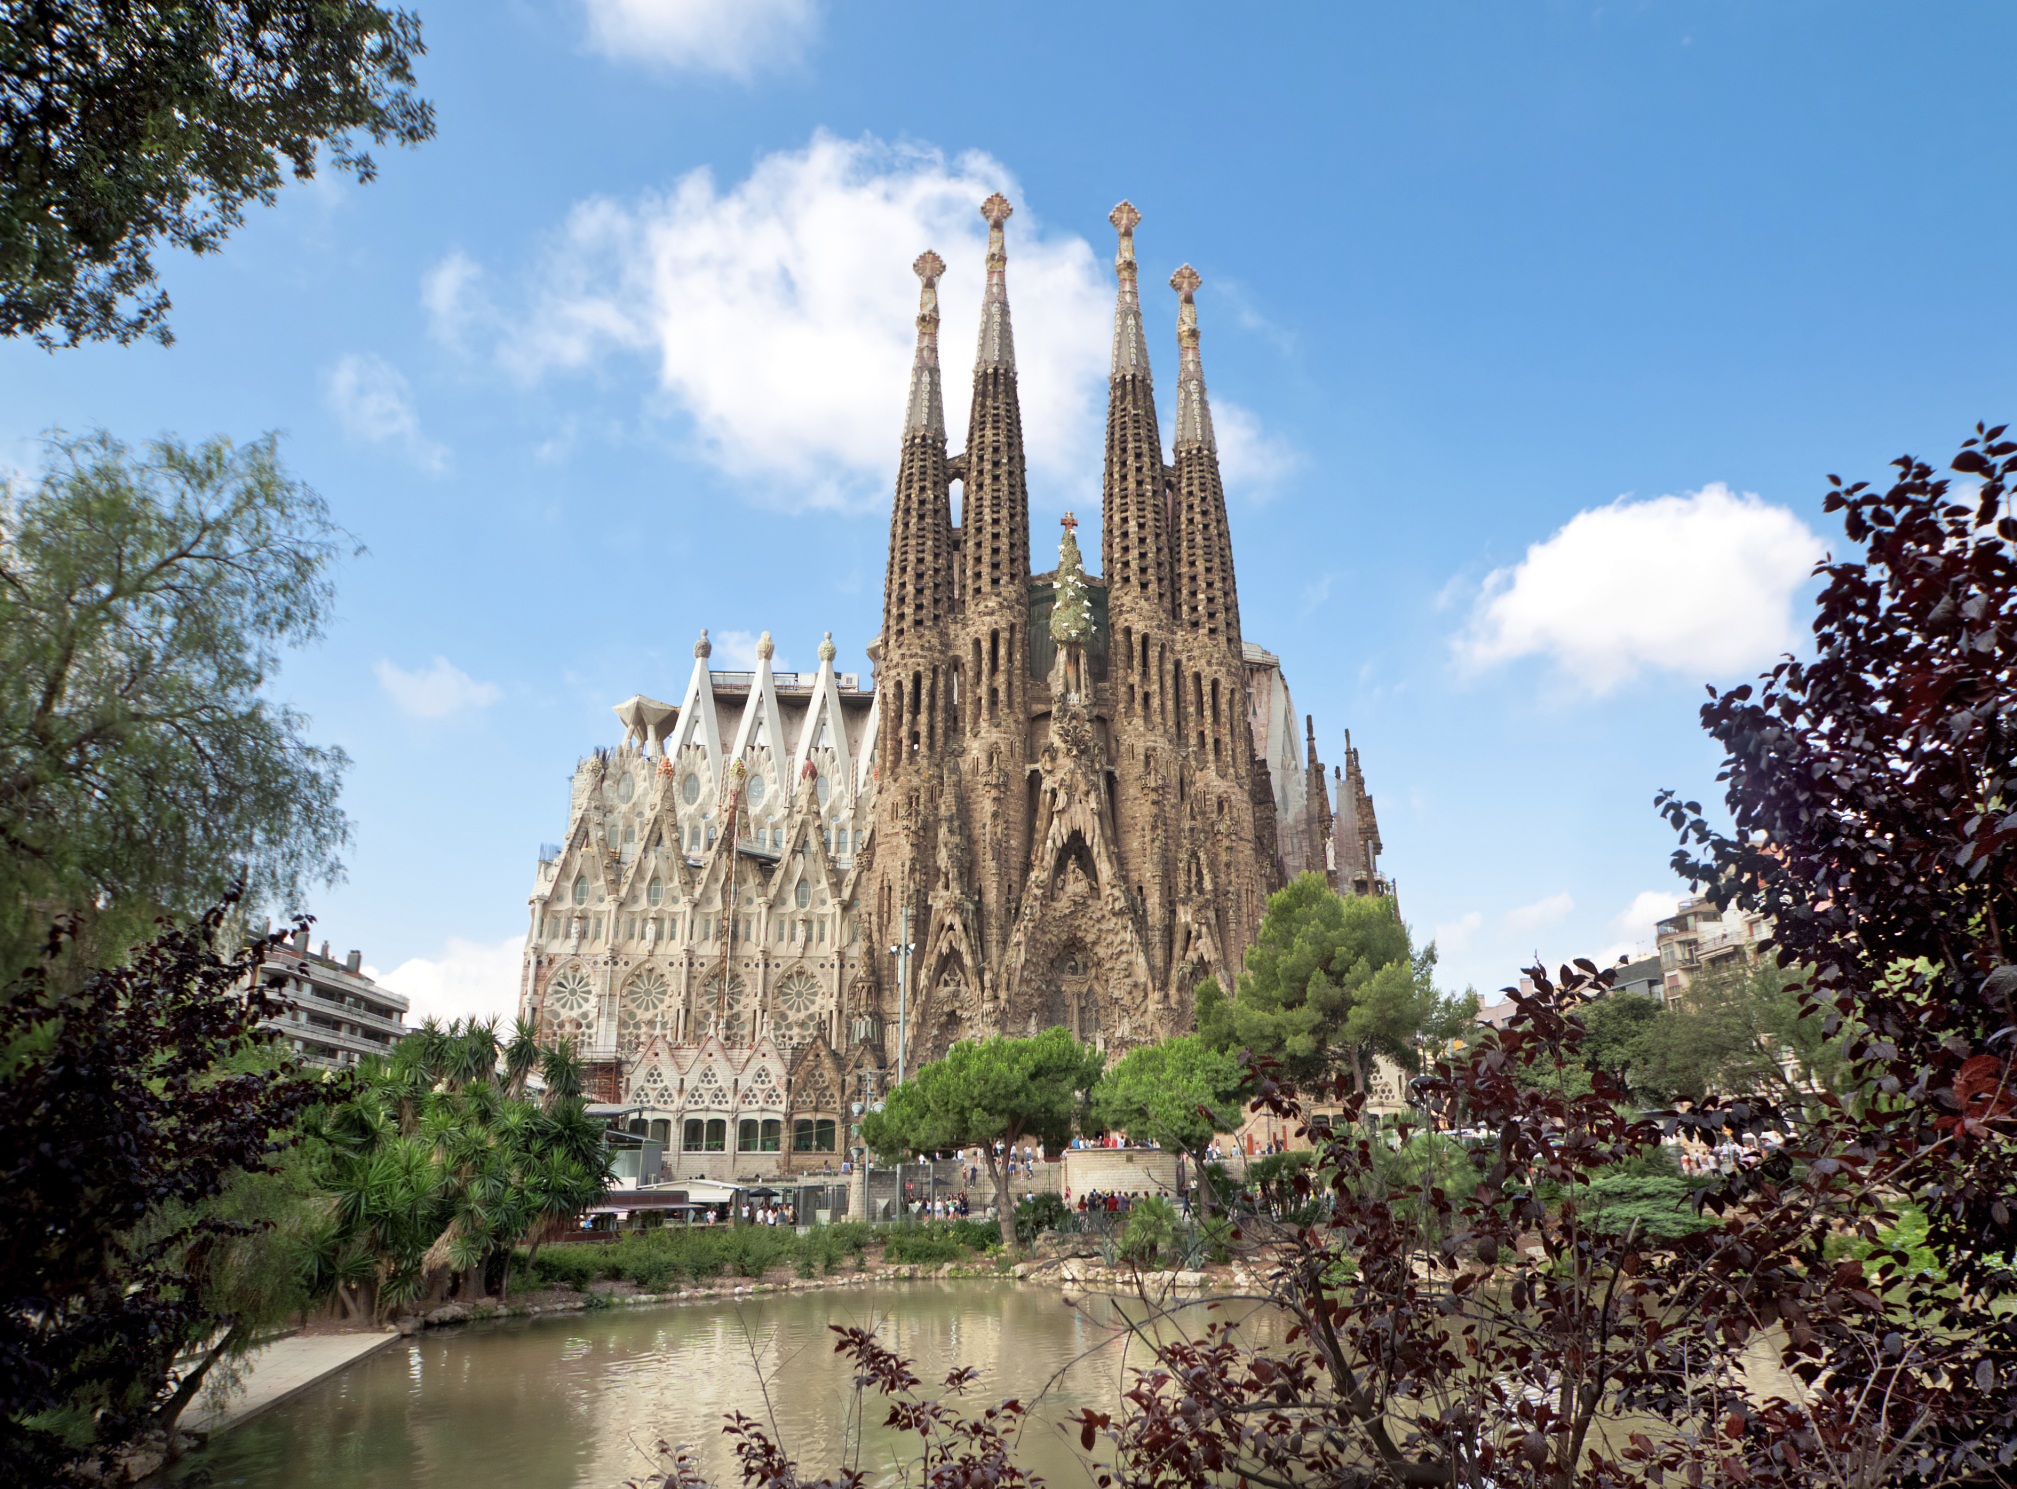 Discovering Gaudi in Barcelona